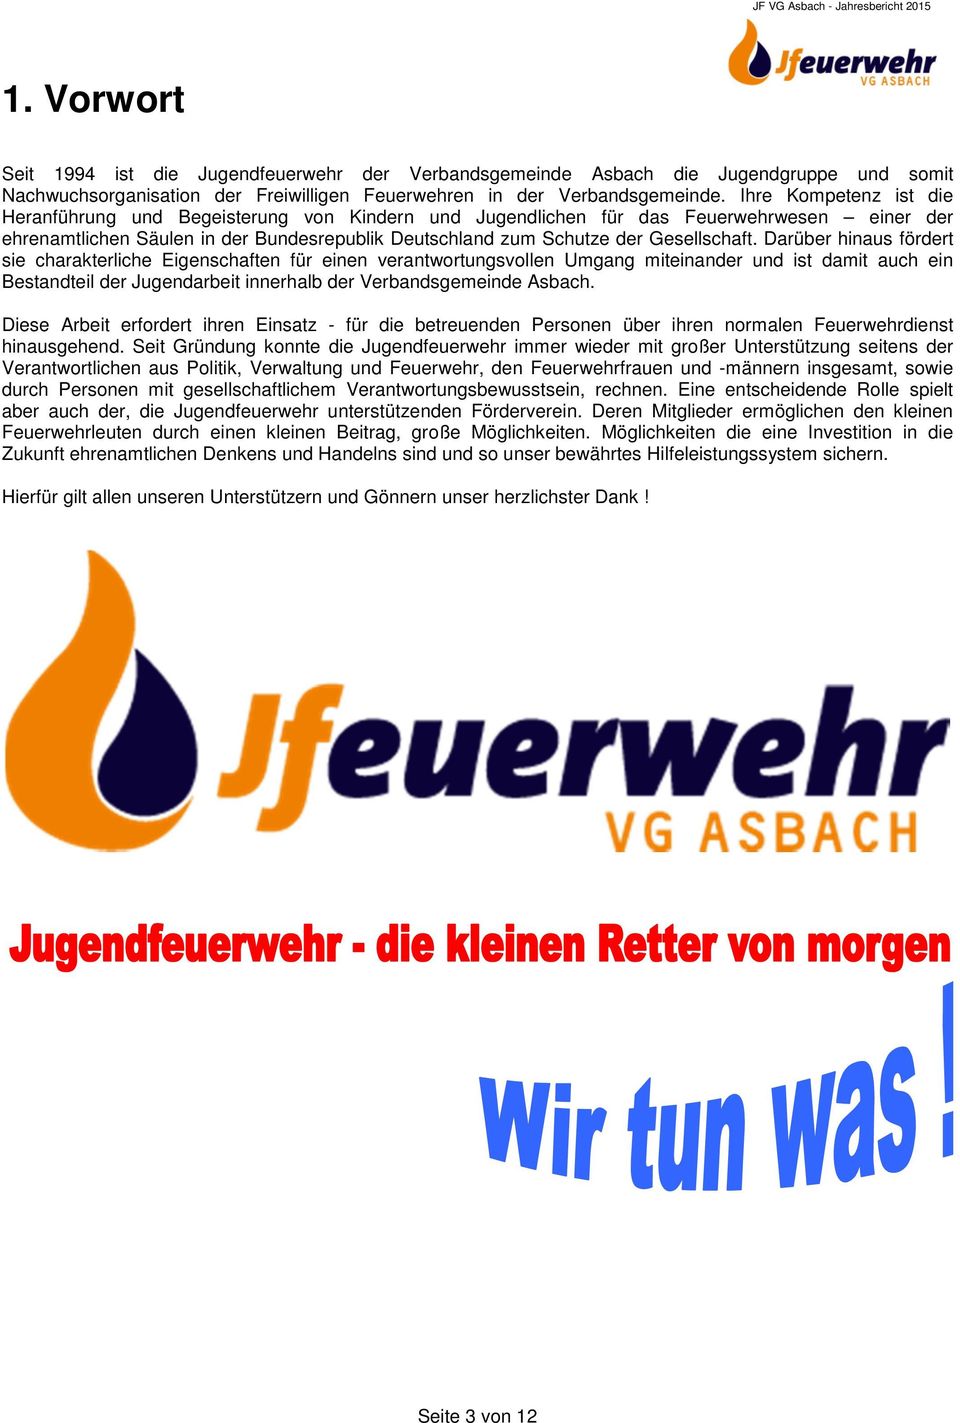 Darüber hinaus fördert sie charakterliche Eigenschaften für einen verantwortungsvollen Umgang miteinander und ist damit auch ein Bestandteil der Jugendarbeit innerhalb der Verbandsgemeinde Asbach.